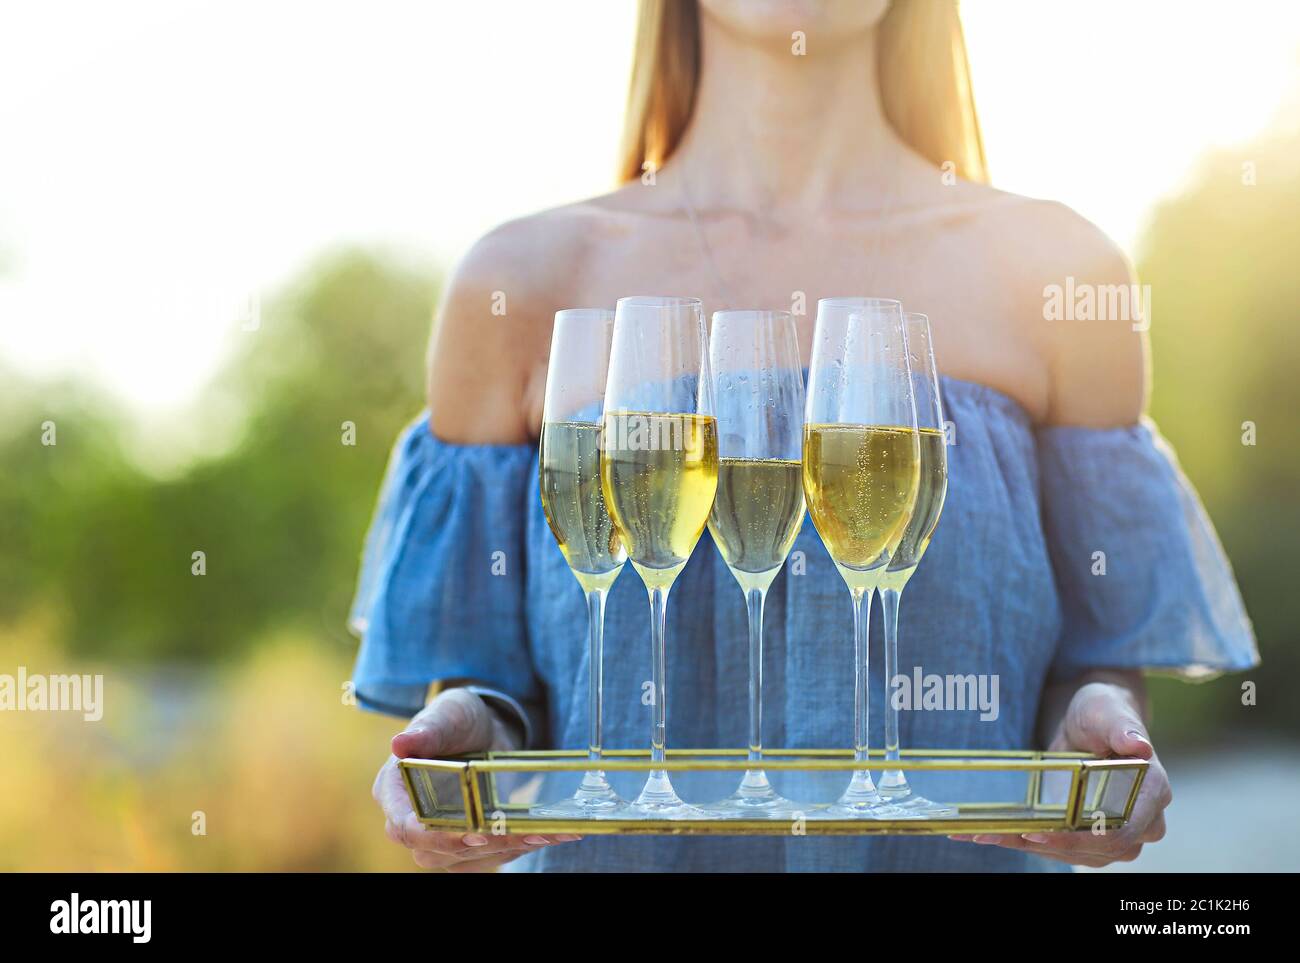 Bonne femme tenant un plateau avec du champagne vin mousseux dans des verres à l'extérieur sur une plage Banque D'Images